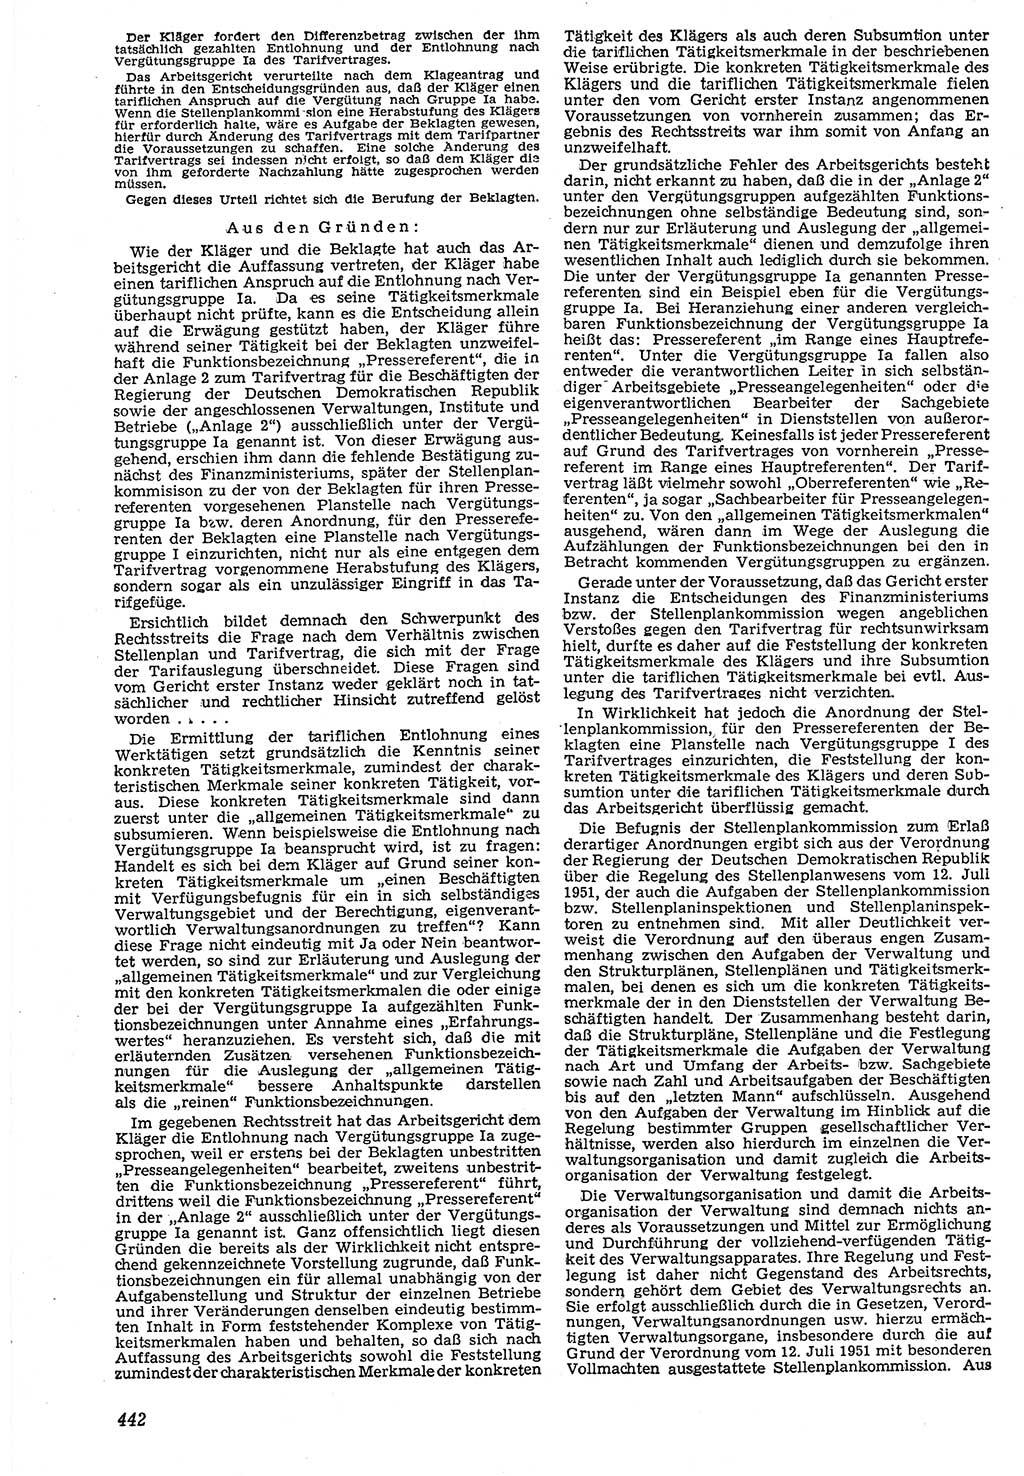 Neue Justiz (NJ), Zeitschrift für Recht und Rechtswissenschaft [Deutsche Demokratische Republik (DDR)], 7. Jahrgang 1953, Seite 442 (NJ DDR 1953, S. 442)